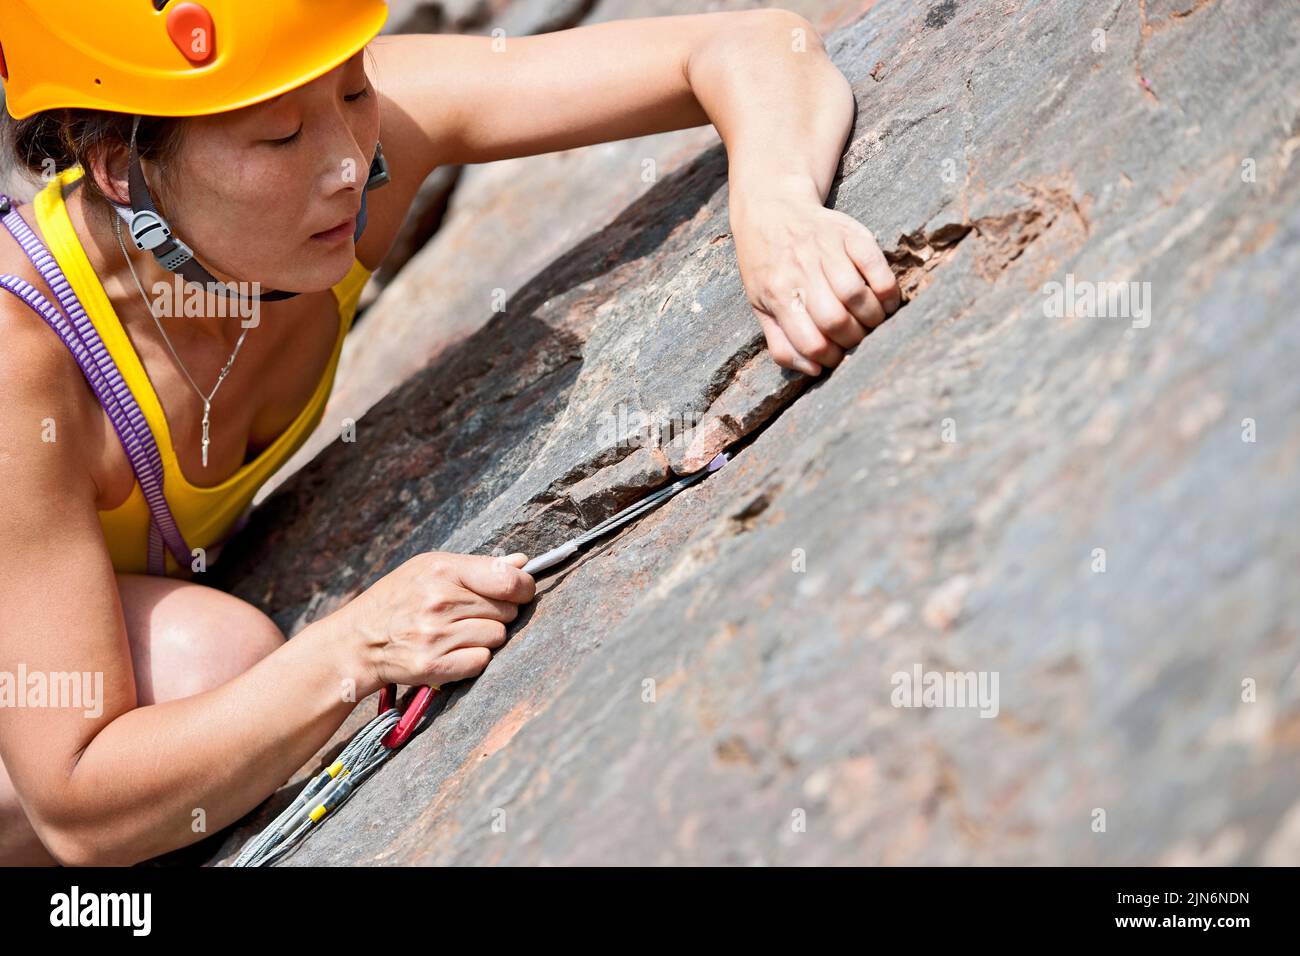 Femme grimpant dans la carrière de grotte de Fairy en Angleterre Banque D'Images